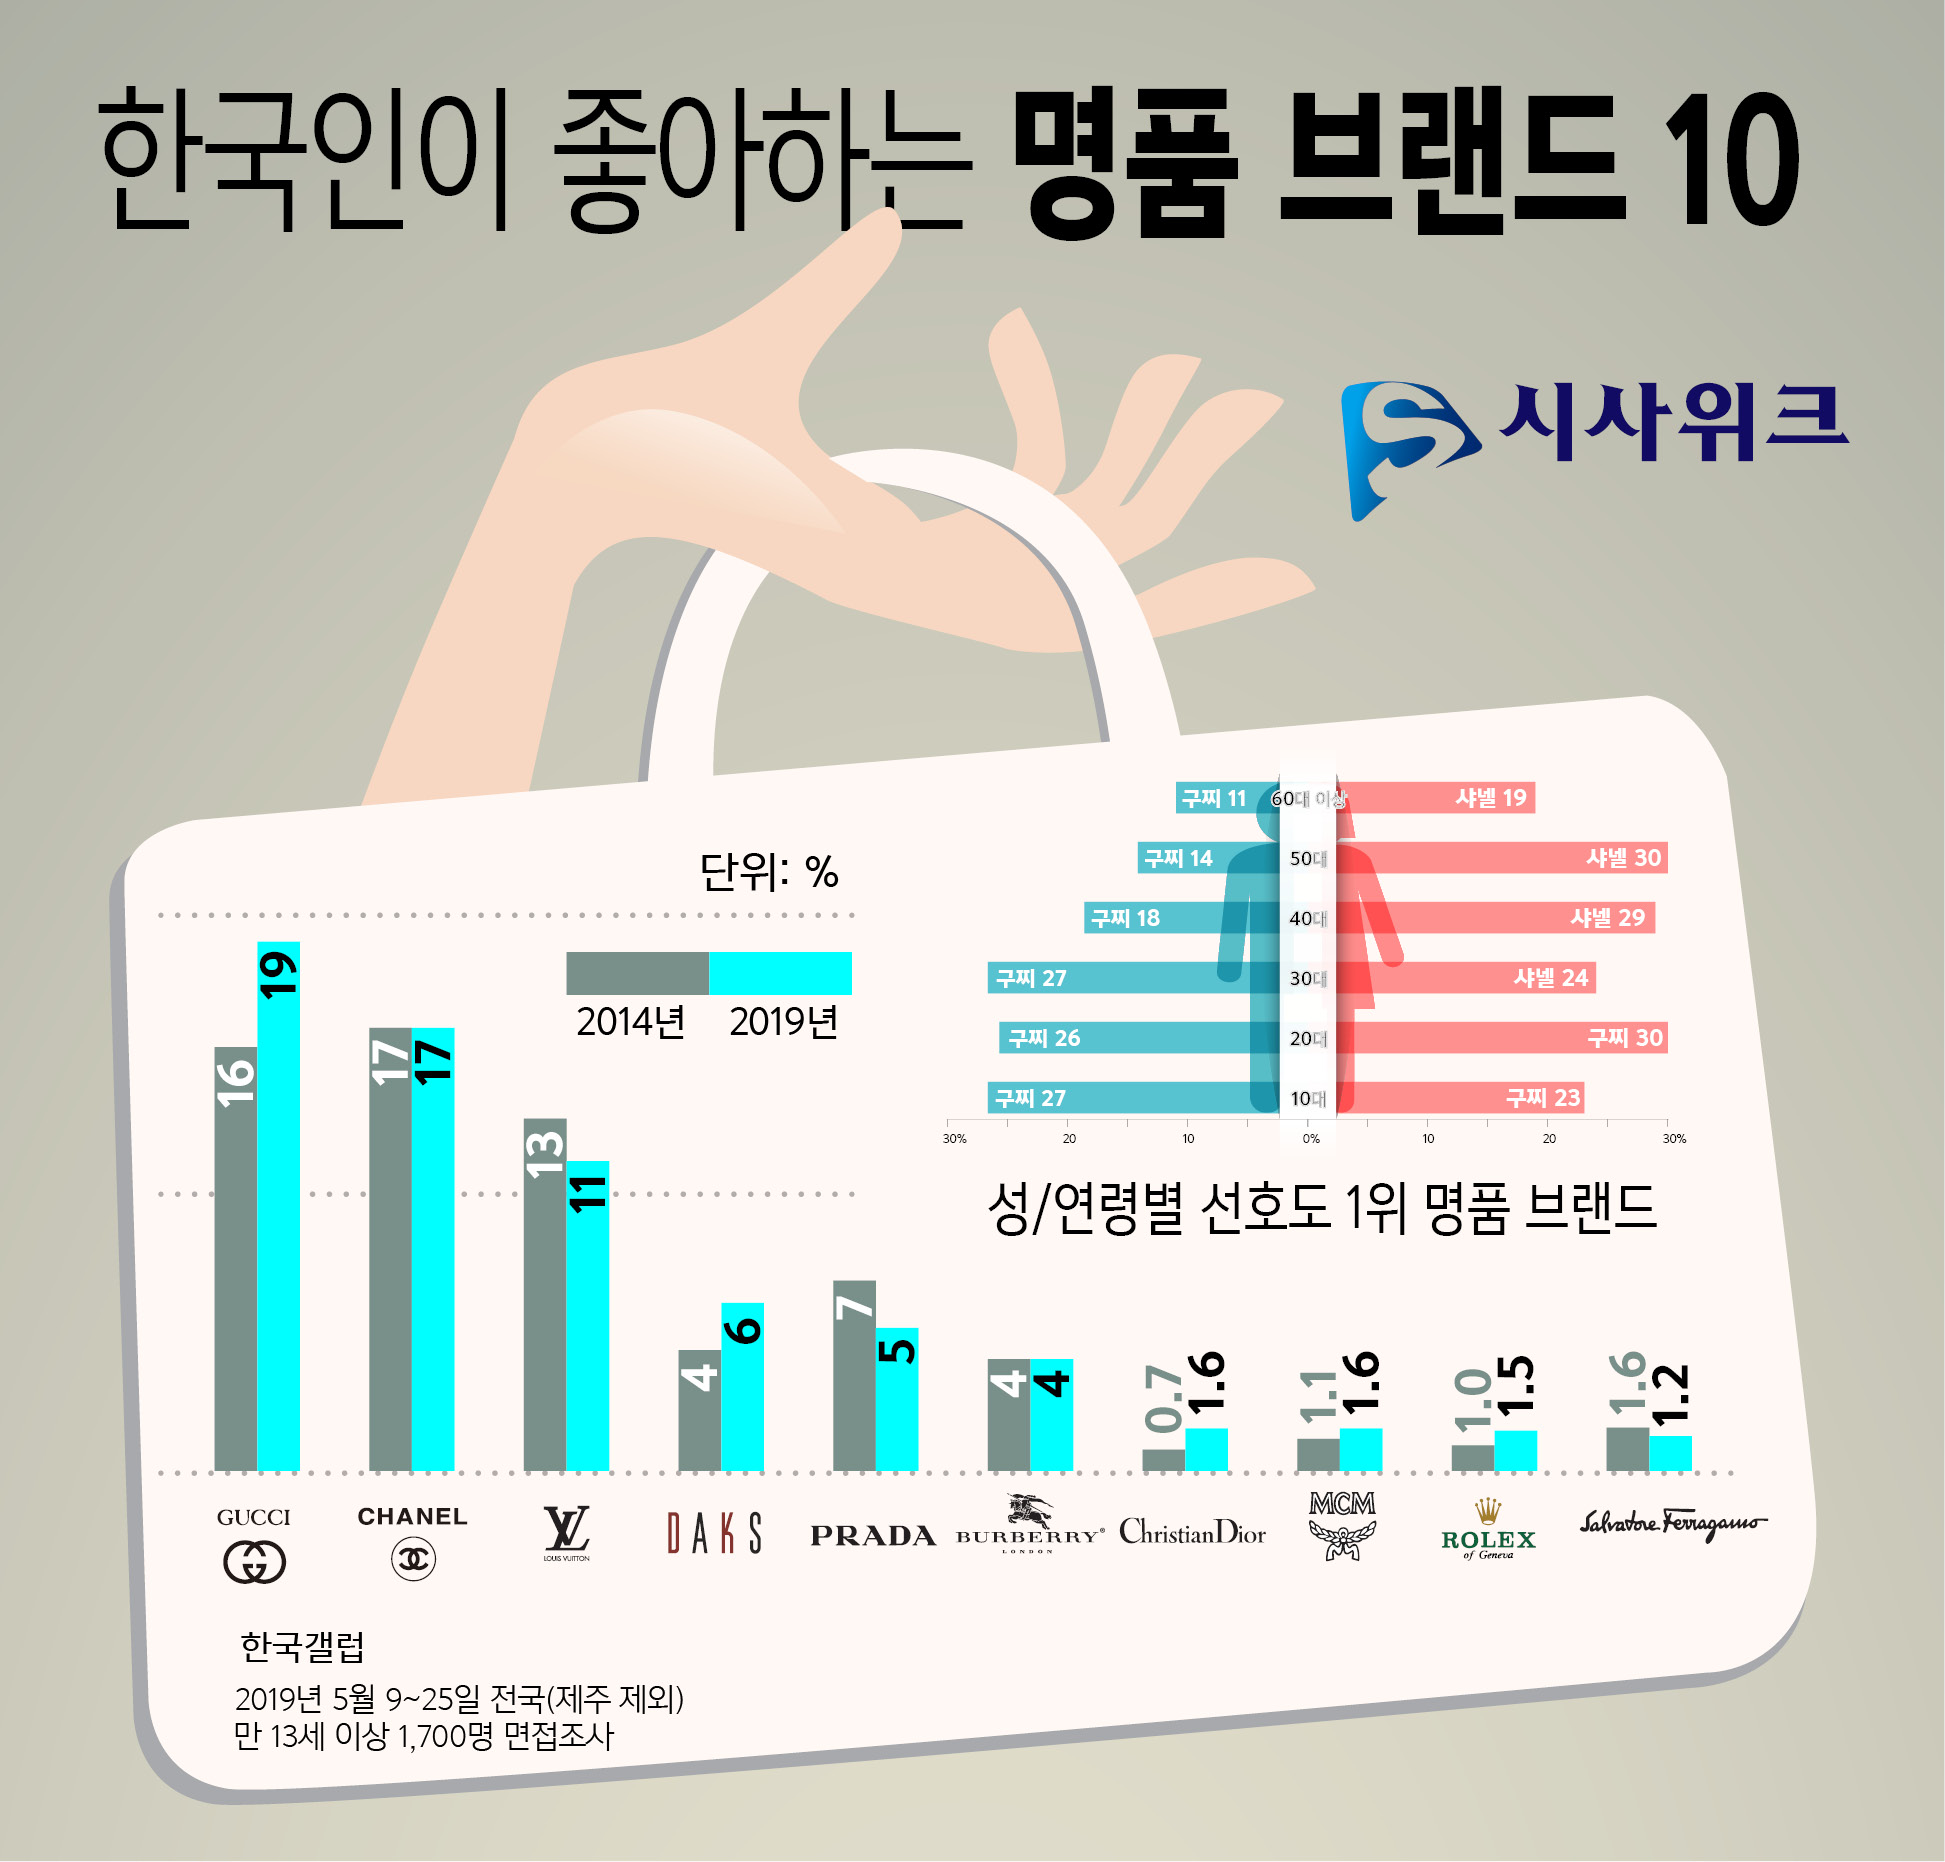 여론조사 전문기관 한국갤럽이 지난 5월 9일부터 25일까지 조사한 ‘한국인이 좋아하는 명품브랜드’ 결과를 18일 공개했다. 구찌, 샤넬, 루이비통 등 3개 브랜드가 10%를 넘어섰다. 2단계 층화 집락 지역 무작위 추출-표본 지점 내 성/연령별 할당 추출한 전국(제주 제외) 만 13세 이상 남녀 1,700명을 대상으로 면접조사원 인터뷰 방식으로 진행했고, 표본오차는 95% 신뢰수준에서 ±2.4%포인트였다. /그래픽=김상석 기자